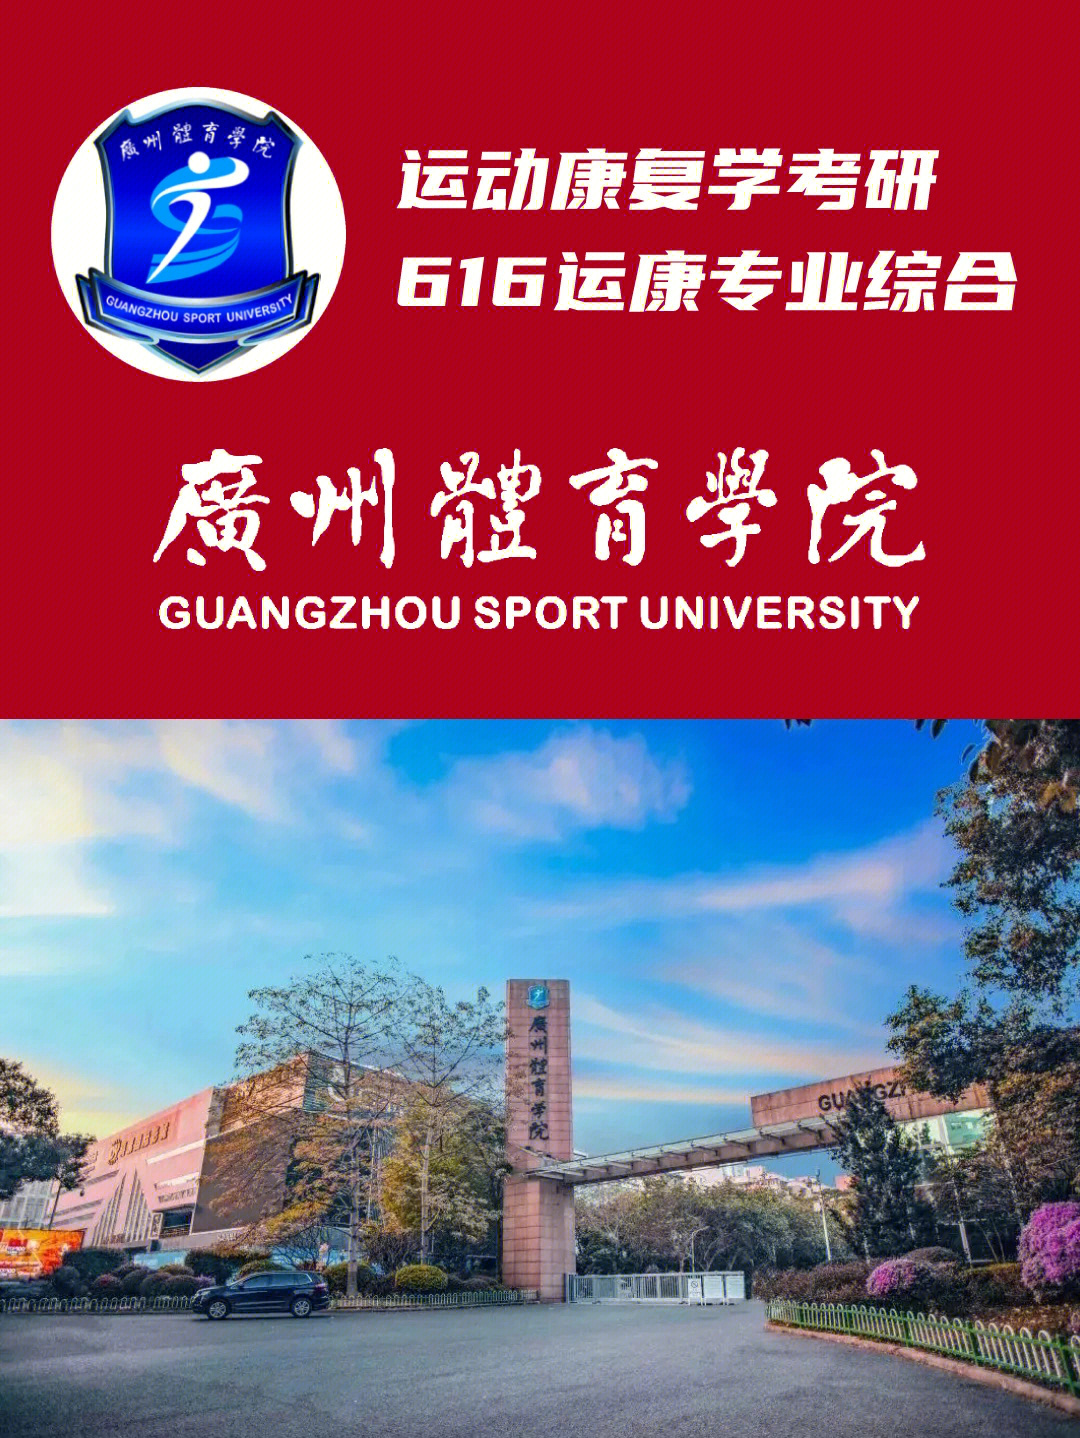 院校简介广州体育学院,始建于1956年7月,是华南地区惟一的体育本科